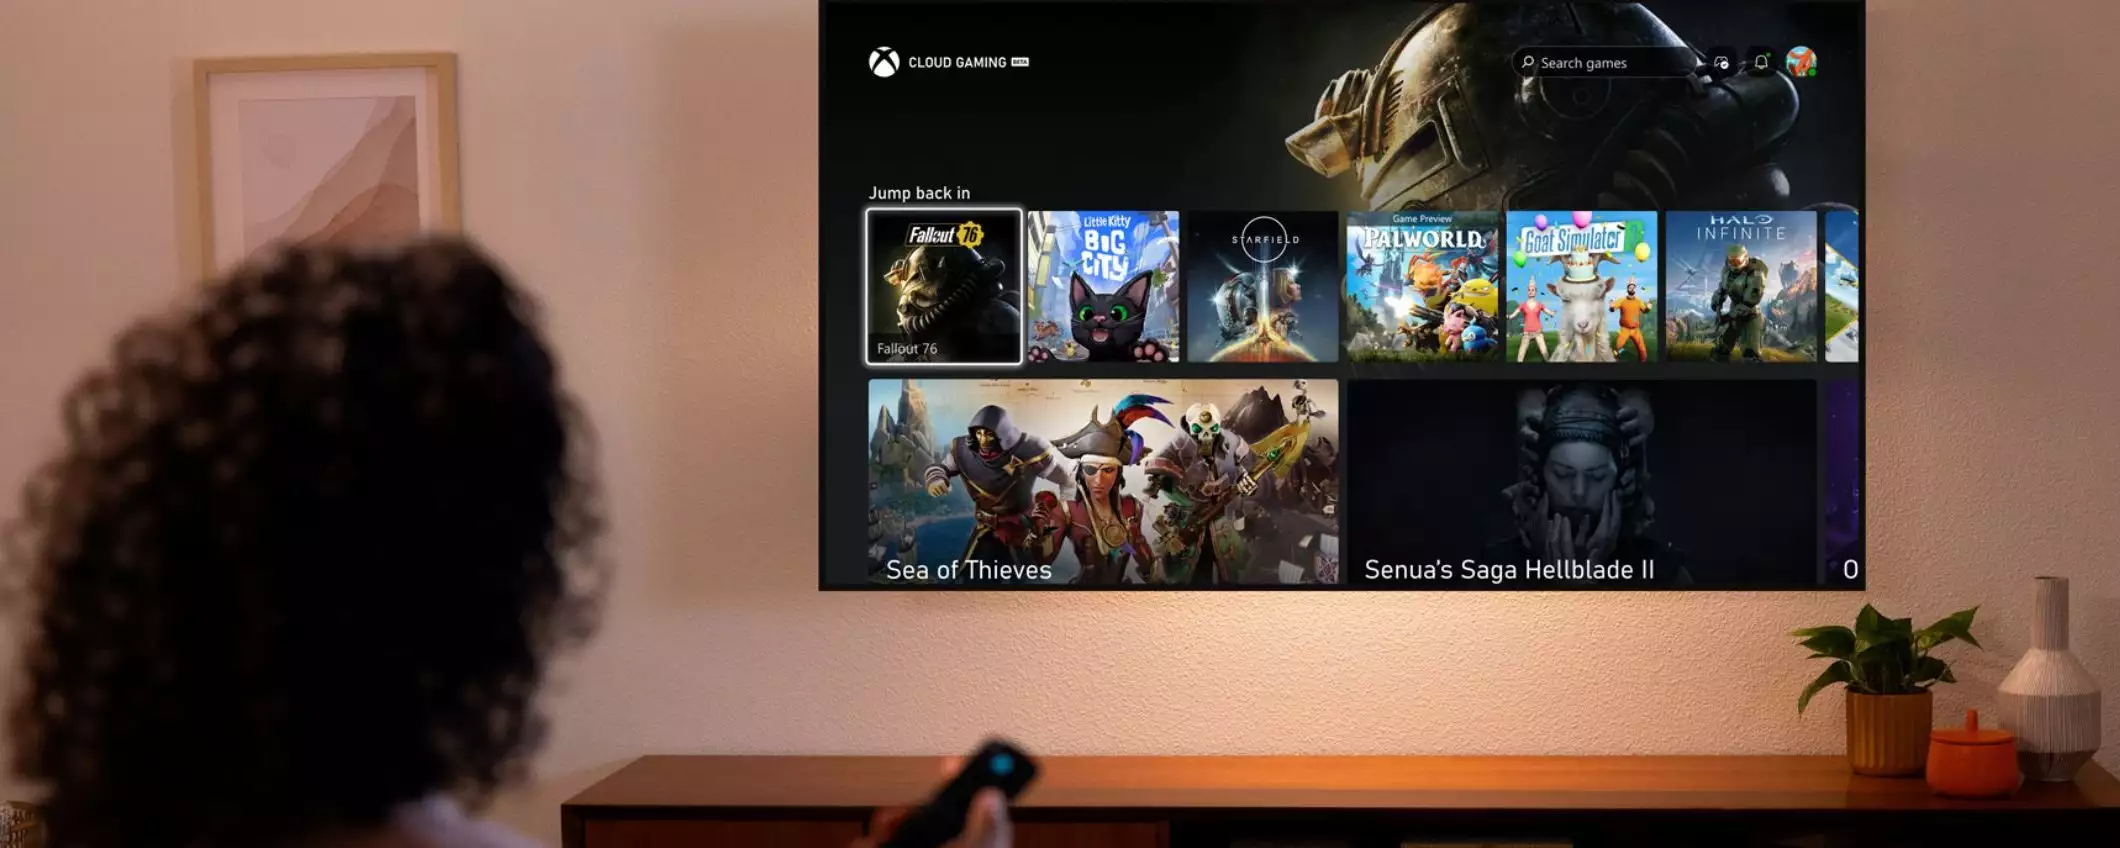 Che BOMBA: presto potrai giocare i titoli Xbox anche su Fire TV Stick senza console